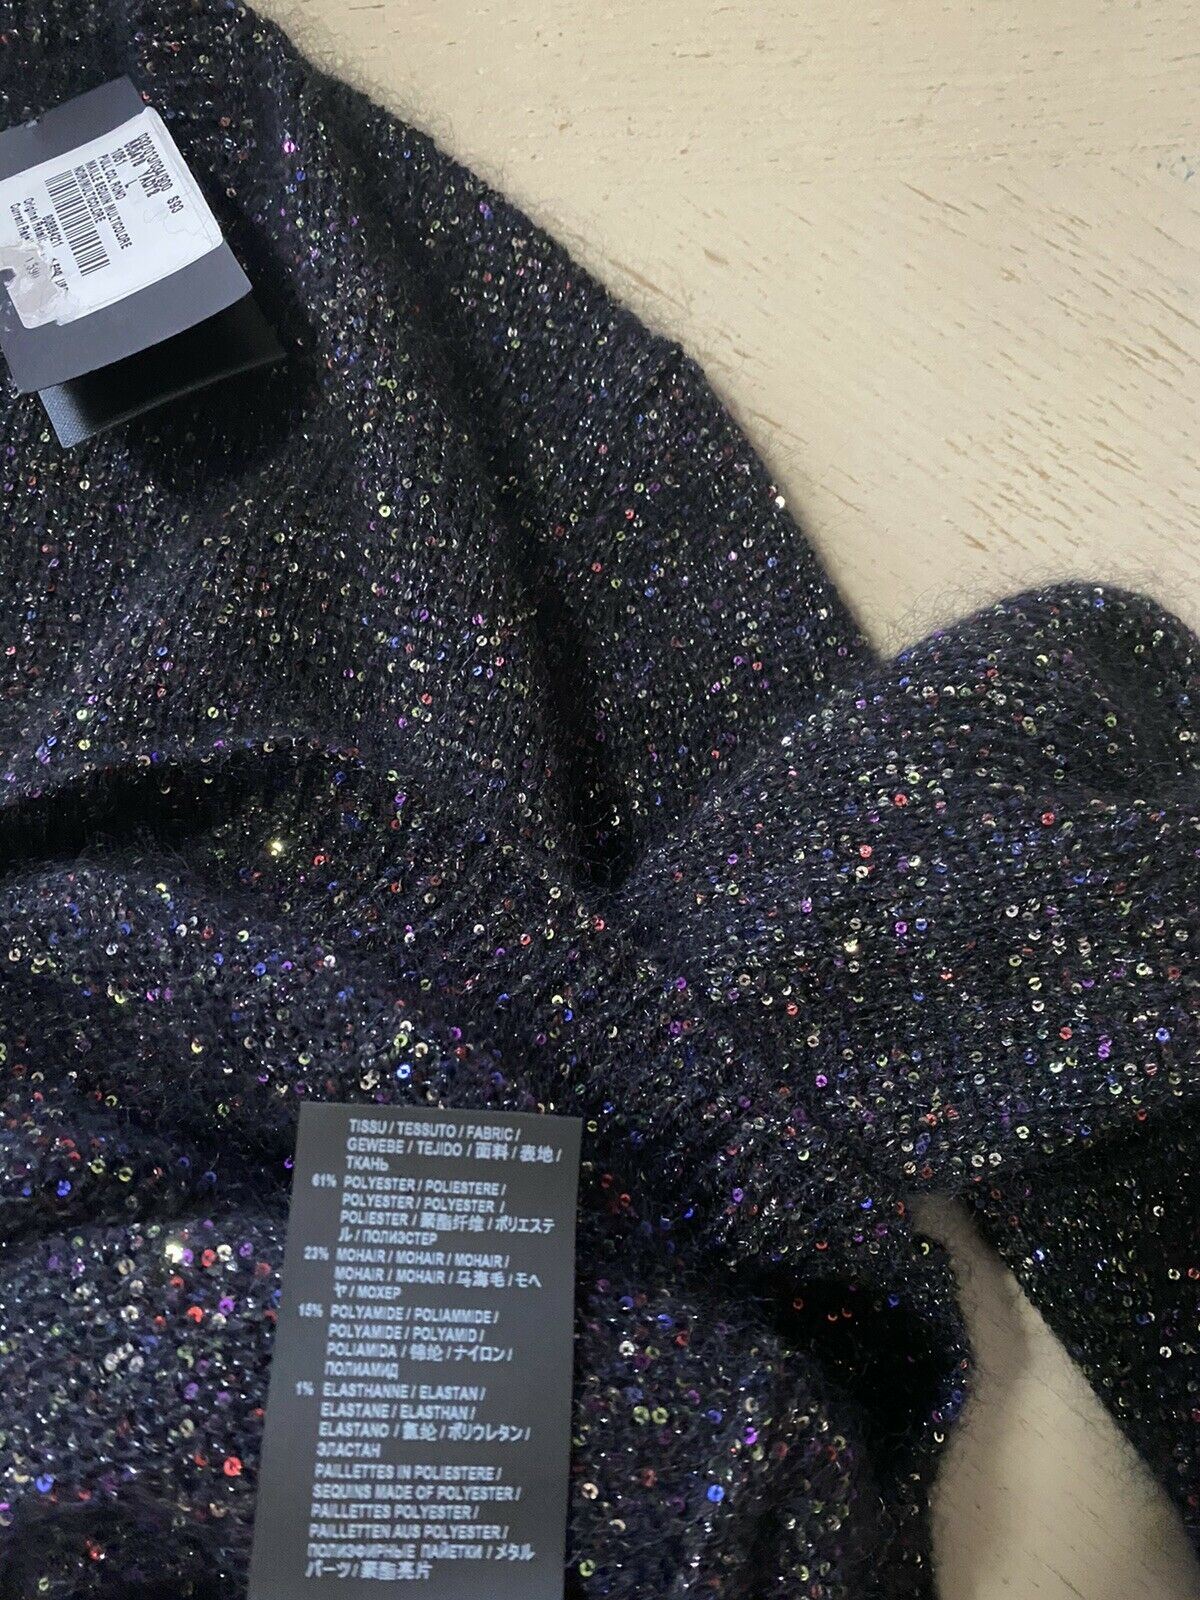 NWT $1590 Saint Laurent Men Crewneck Sweater  Black/Multicolor Size L Italy